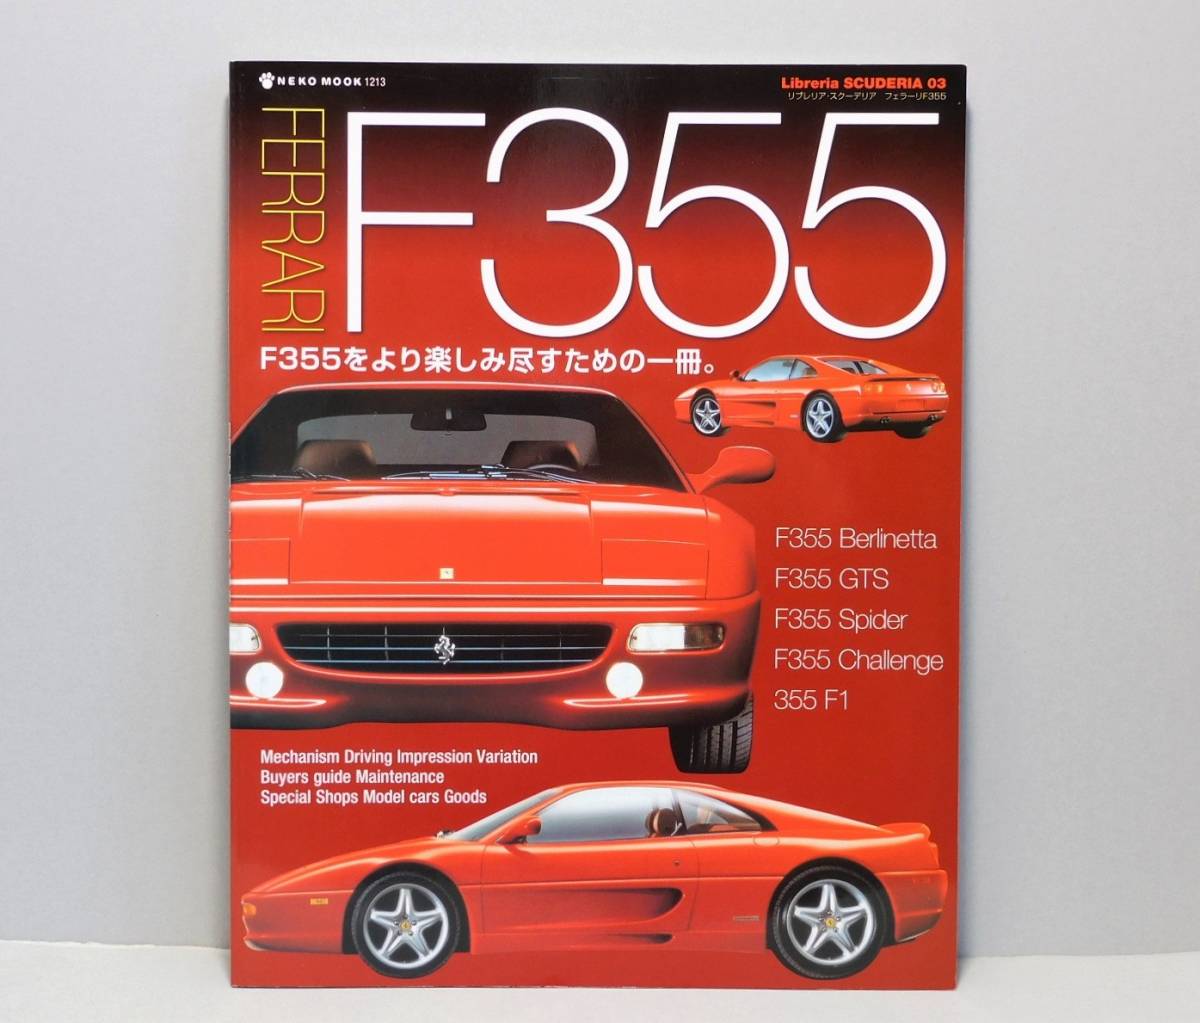 40％割引入荷中 ☆08年 フェラーリ Ferrari F355 をより楽しみ尽すための一冊 Libreria SCUDERIA☆NEKO MOOK  スーパーカー 資料本 雑誌 自動車、オートバイ 趣味 本、雑誌、コミック-SOLCALOJA.MED.EC